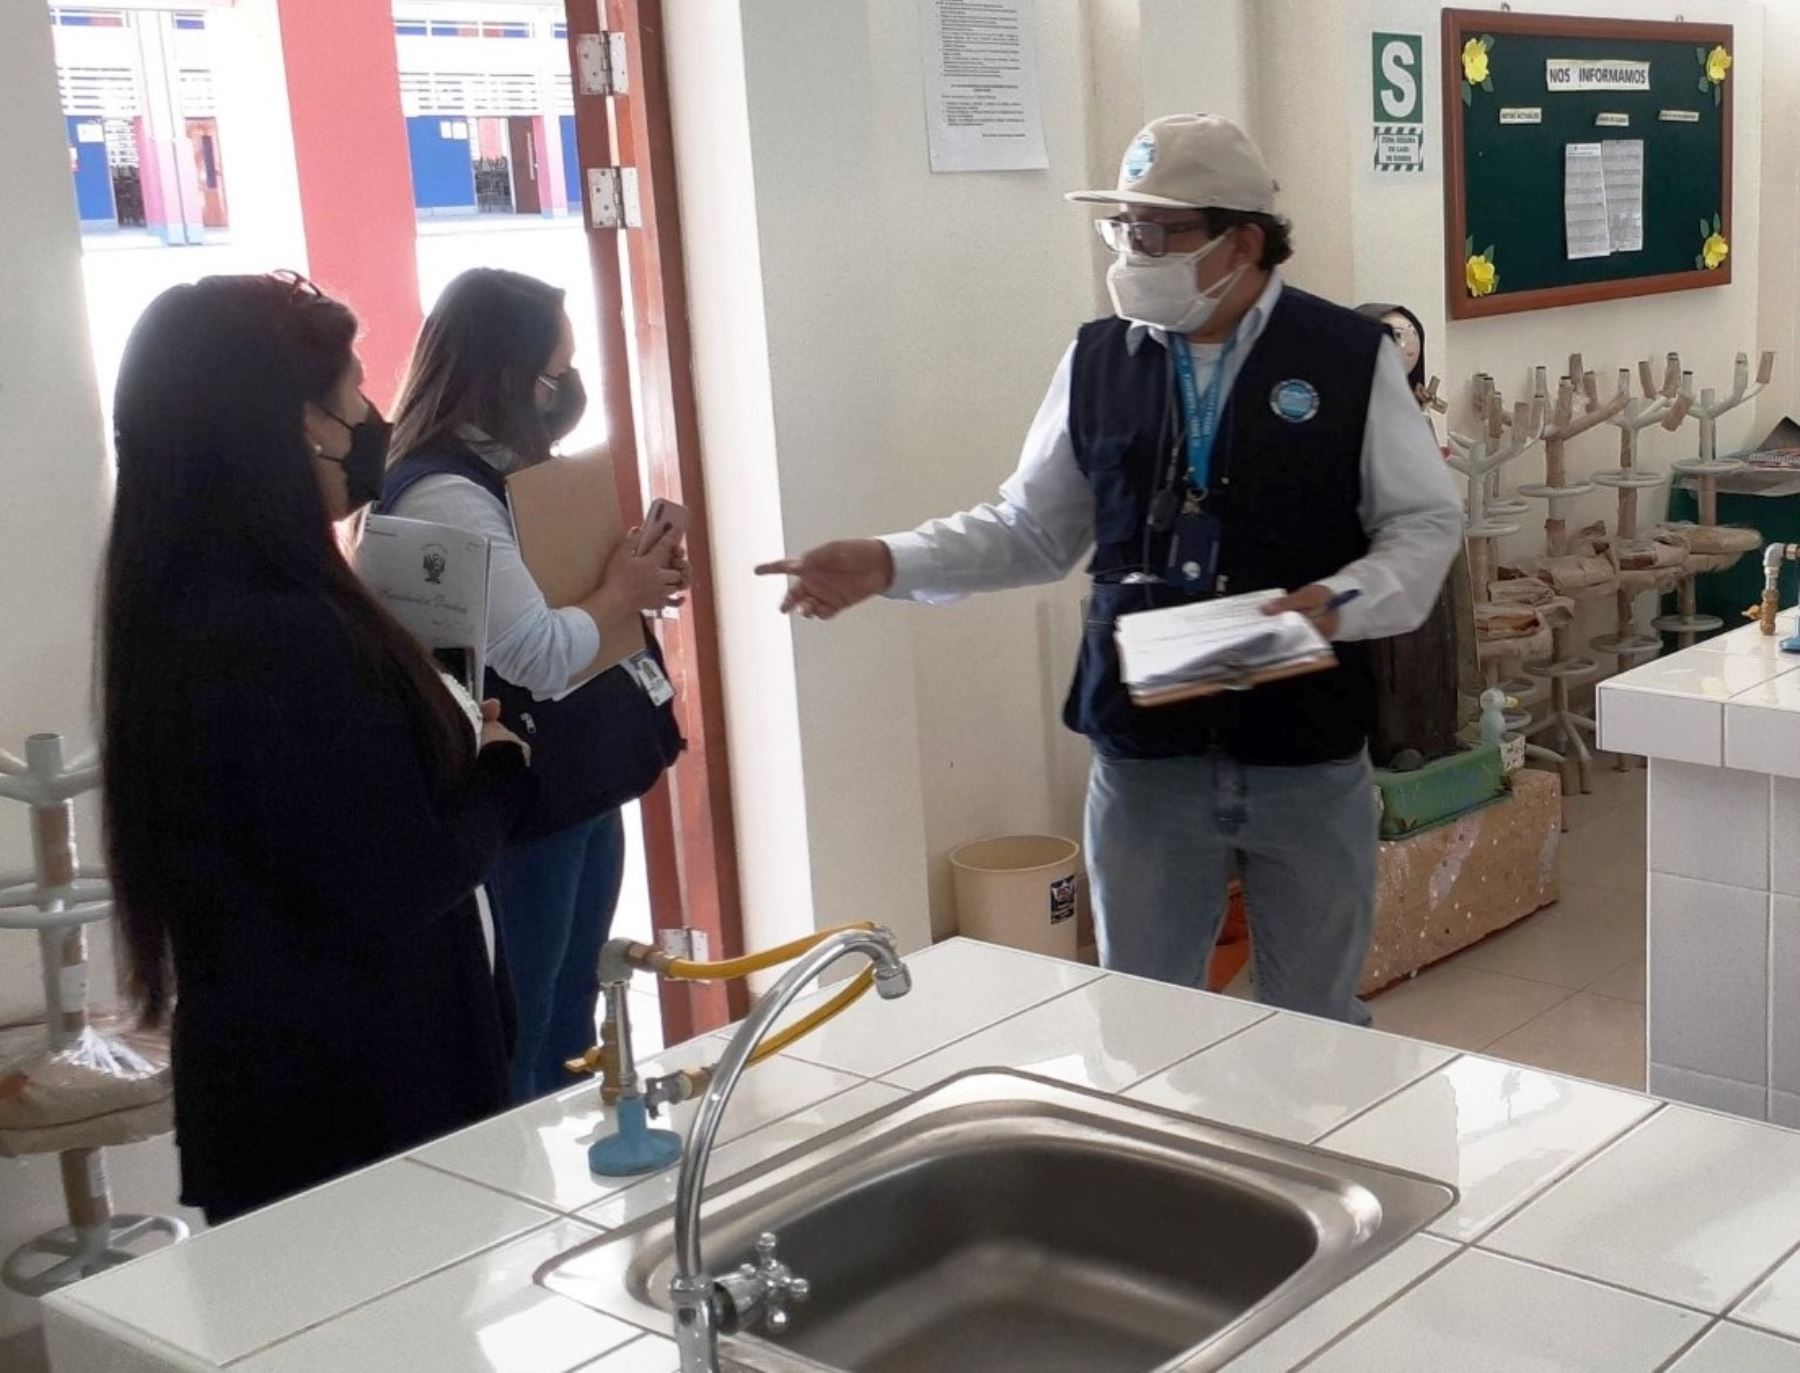 Comisión multisectorial de Cajamarca vigilará el cumplimiento del protocolo de bioseguridad en los colegios para garantizar el retorno seguro a clases presenciales. ANDINA/Difusión